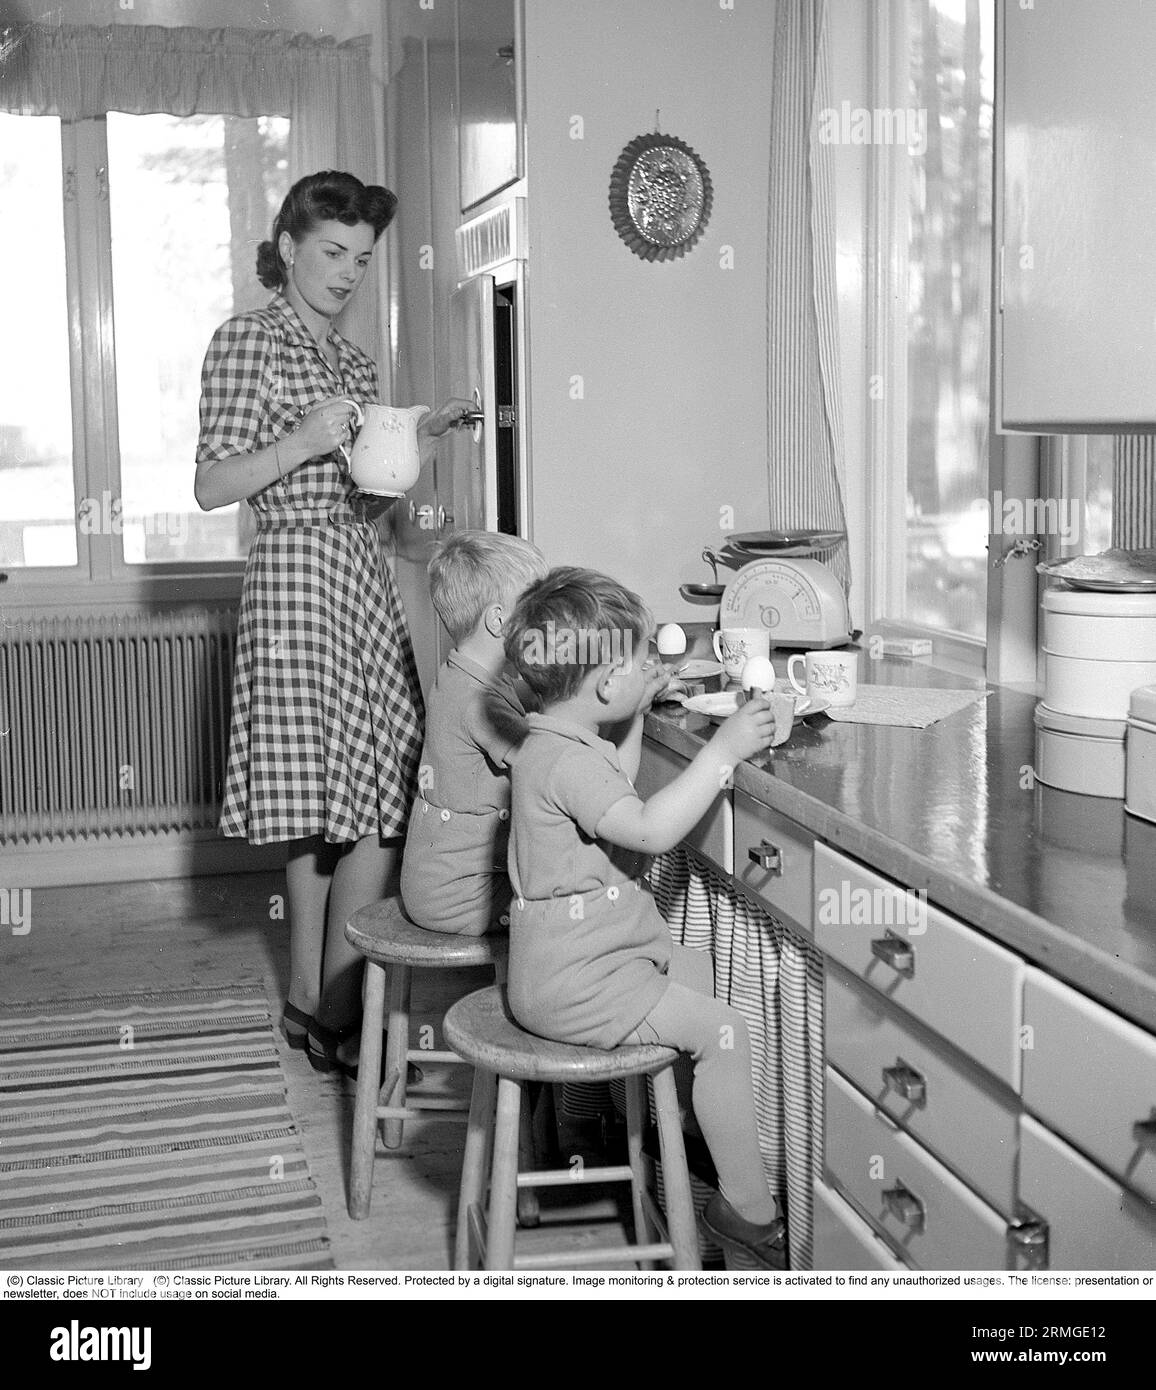 Une jeune mère avec ses deux garçons est dans la cuisine, et elle a servi aux enfants des œufs, des sandwichs et du lait, qu'ils mangent assis sur des tabourets au comptoir de la cuisine. Sur le banc se trouve une balance domestique et des boîtes de conserve pour stocker des gâteaux et du pain. Suède 1945. Kristoffersson réf. R12-2 Banque D'Images